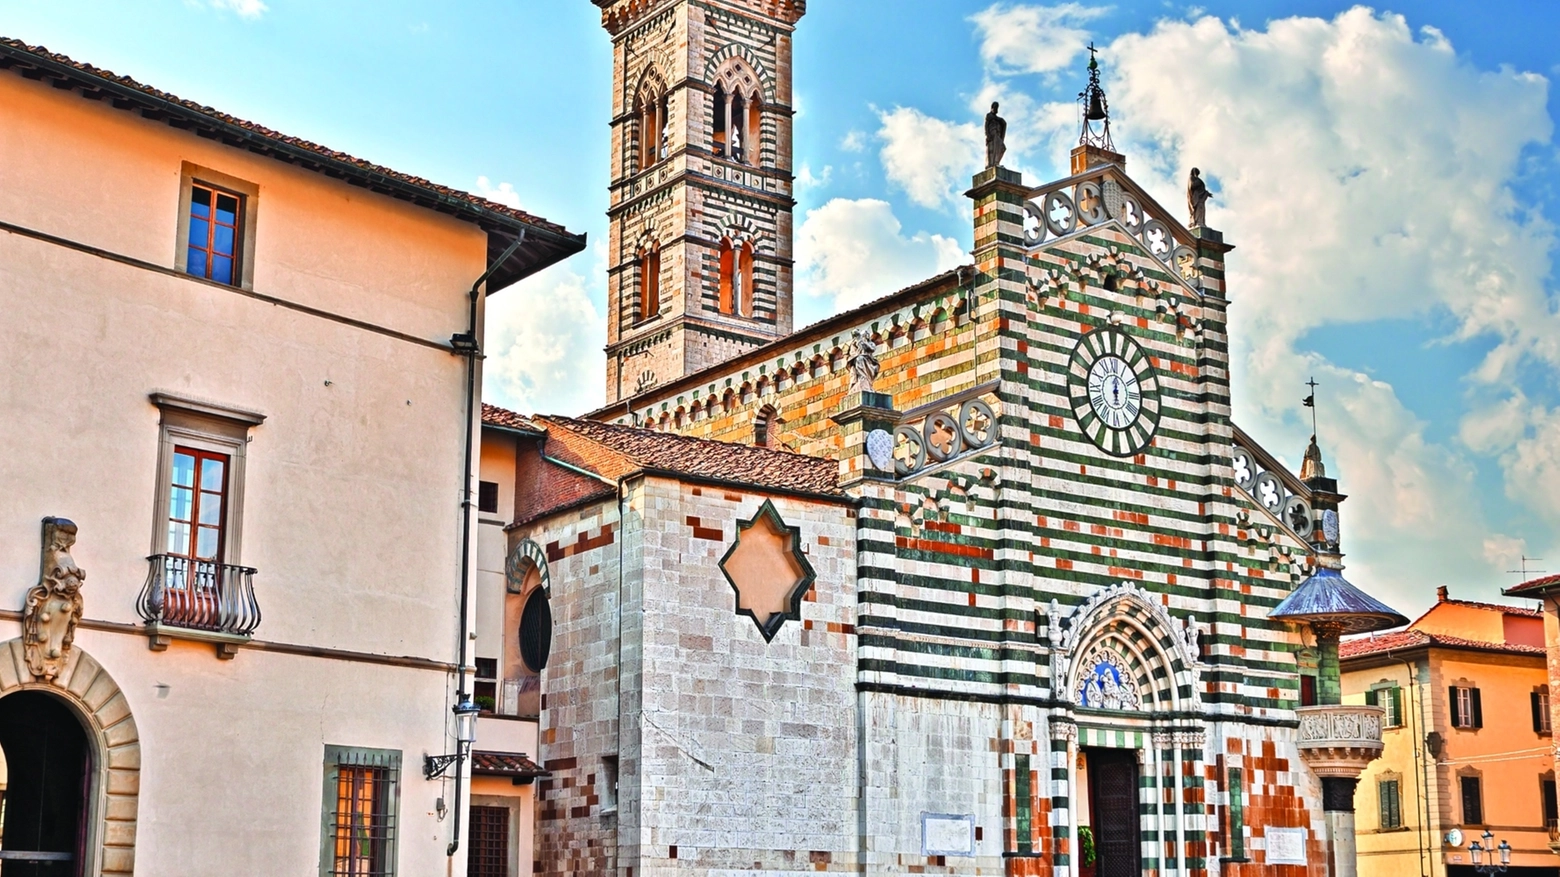  Lo splendido Duomo di Prato, o Cattedrale di Santo Stefano